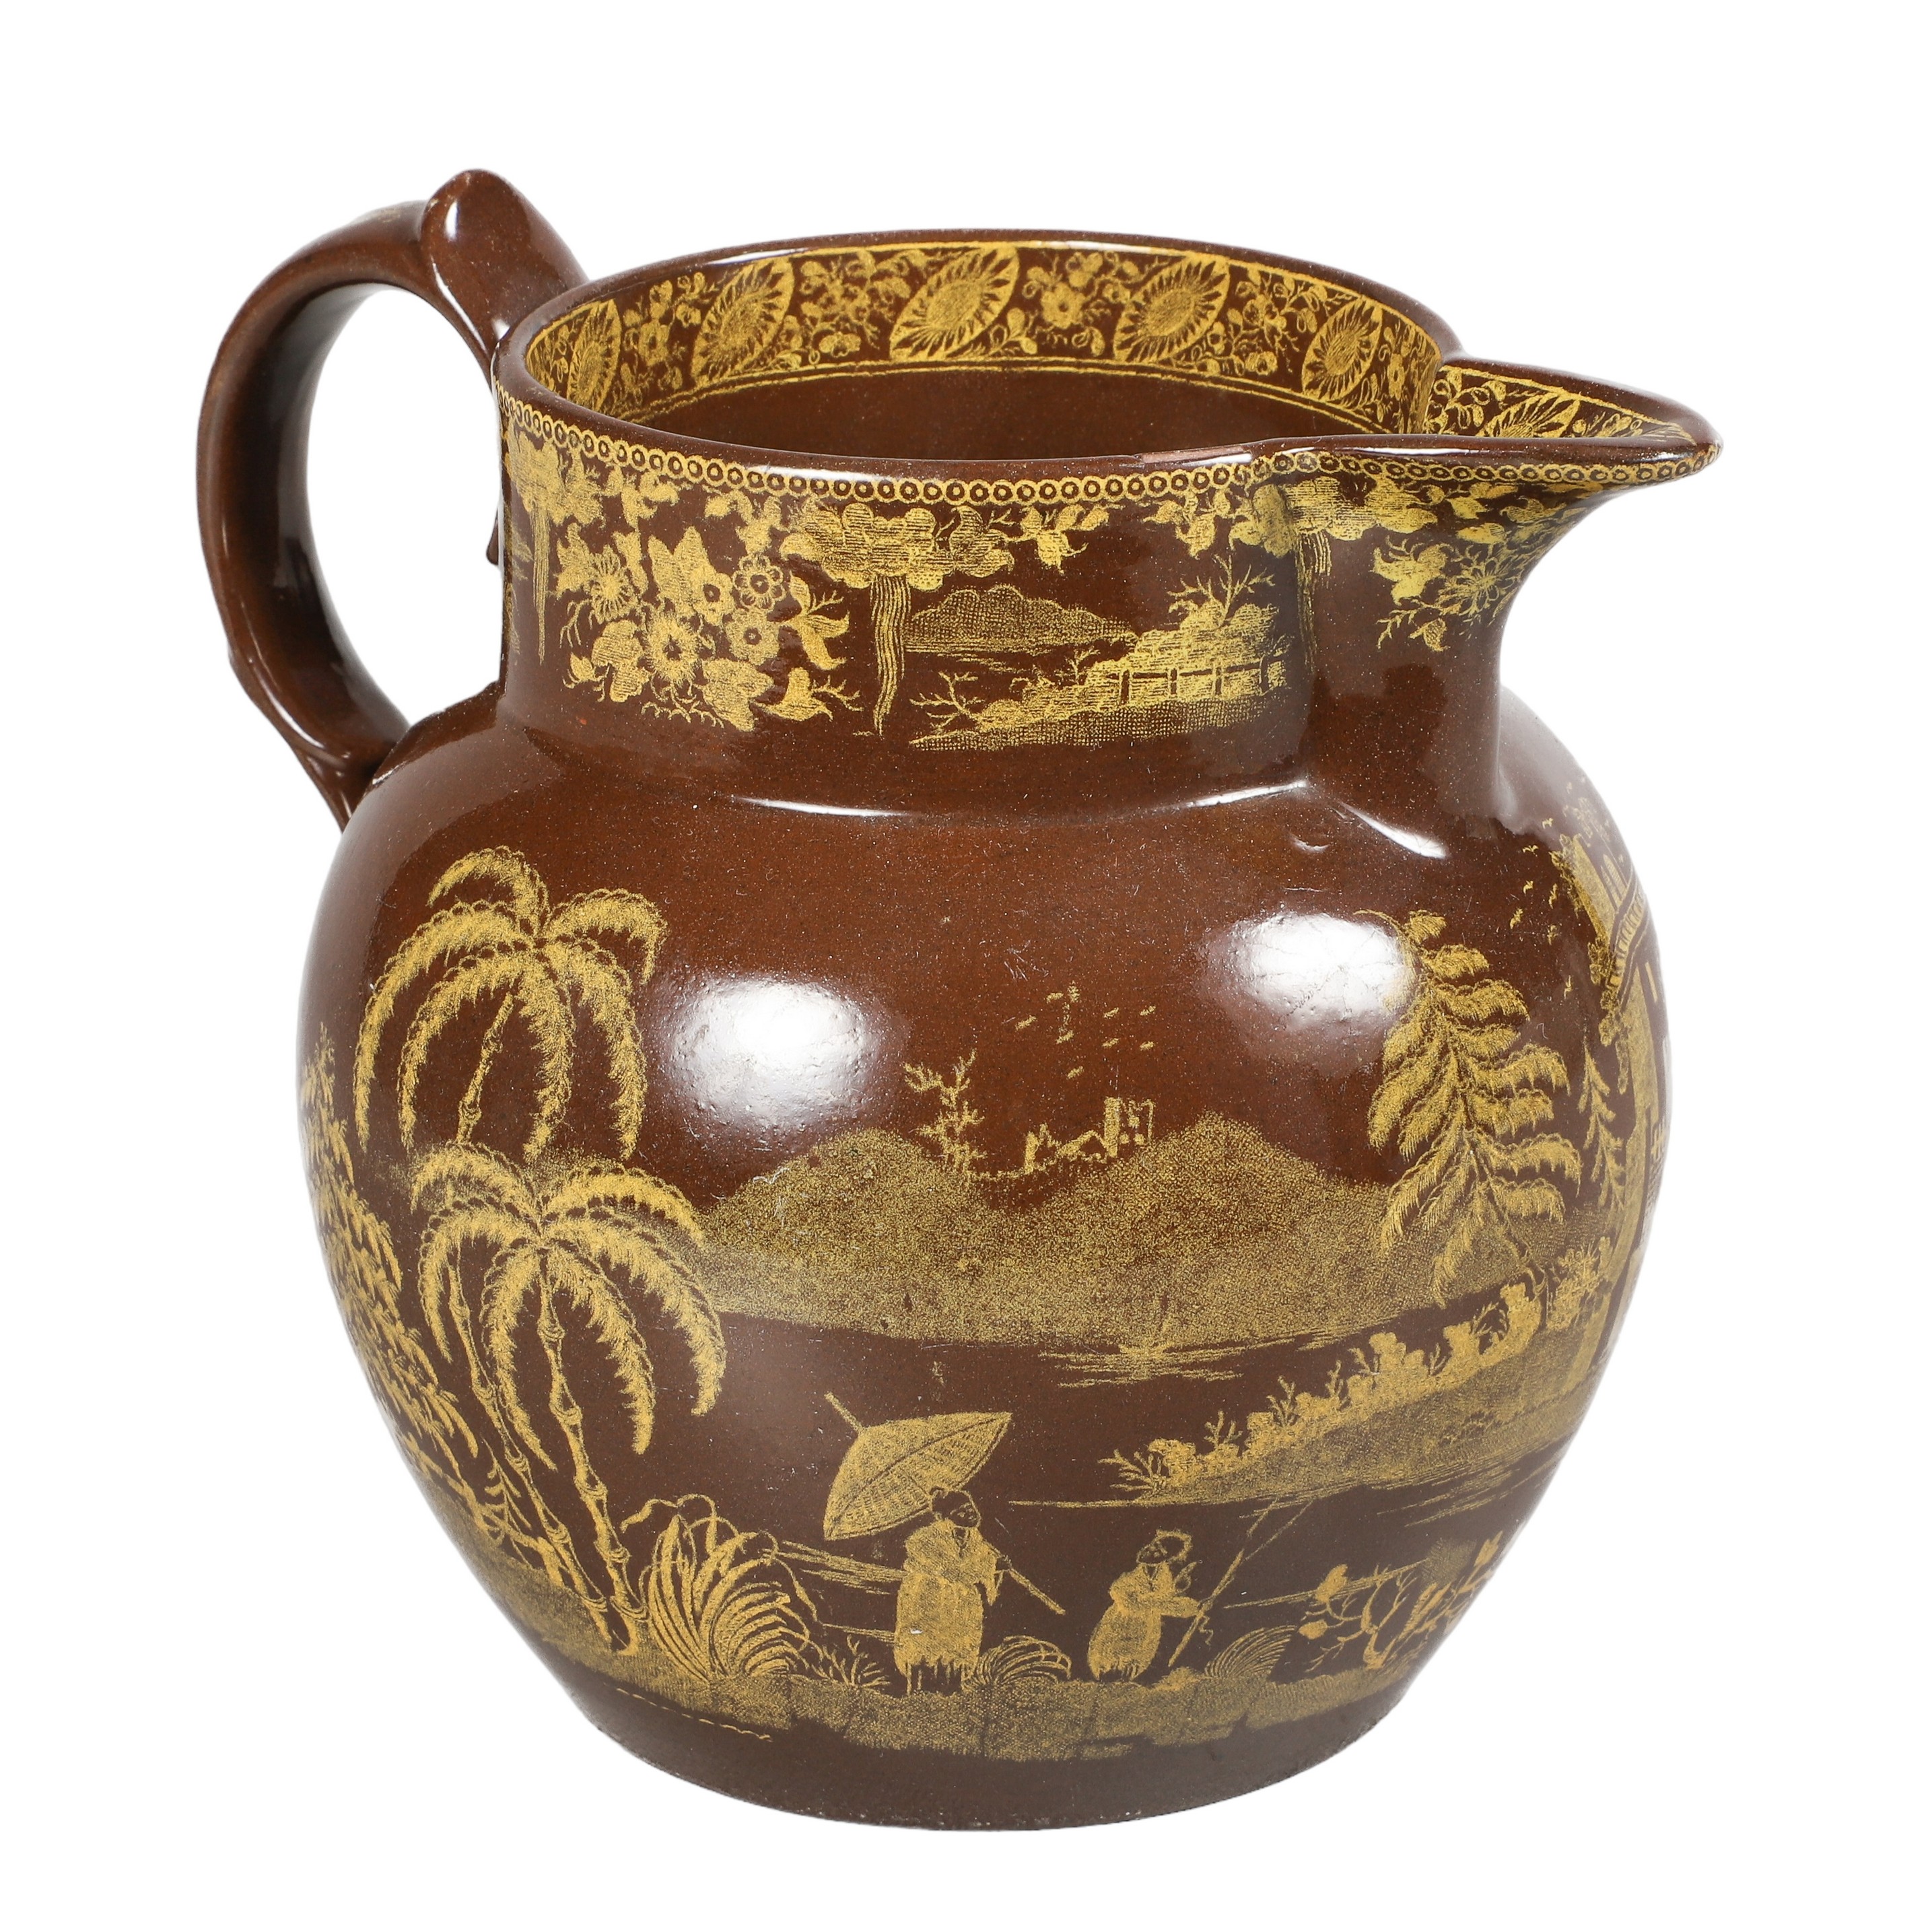 Staffordshire portobello ware pitcher,